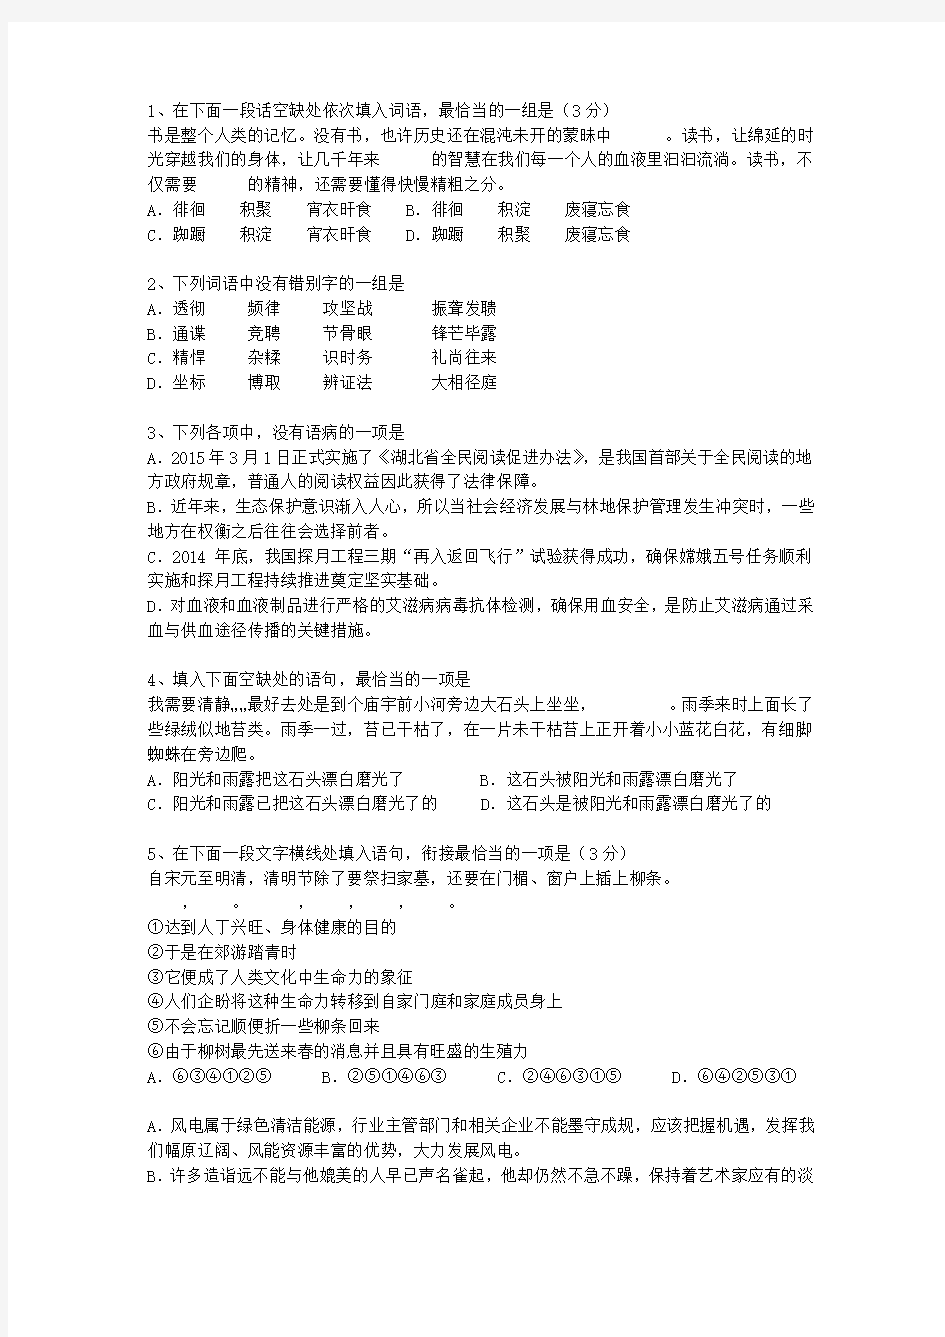 2014贵州省高考语文试卷及答案最新考试题库(完整版)_图文